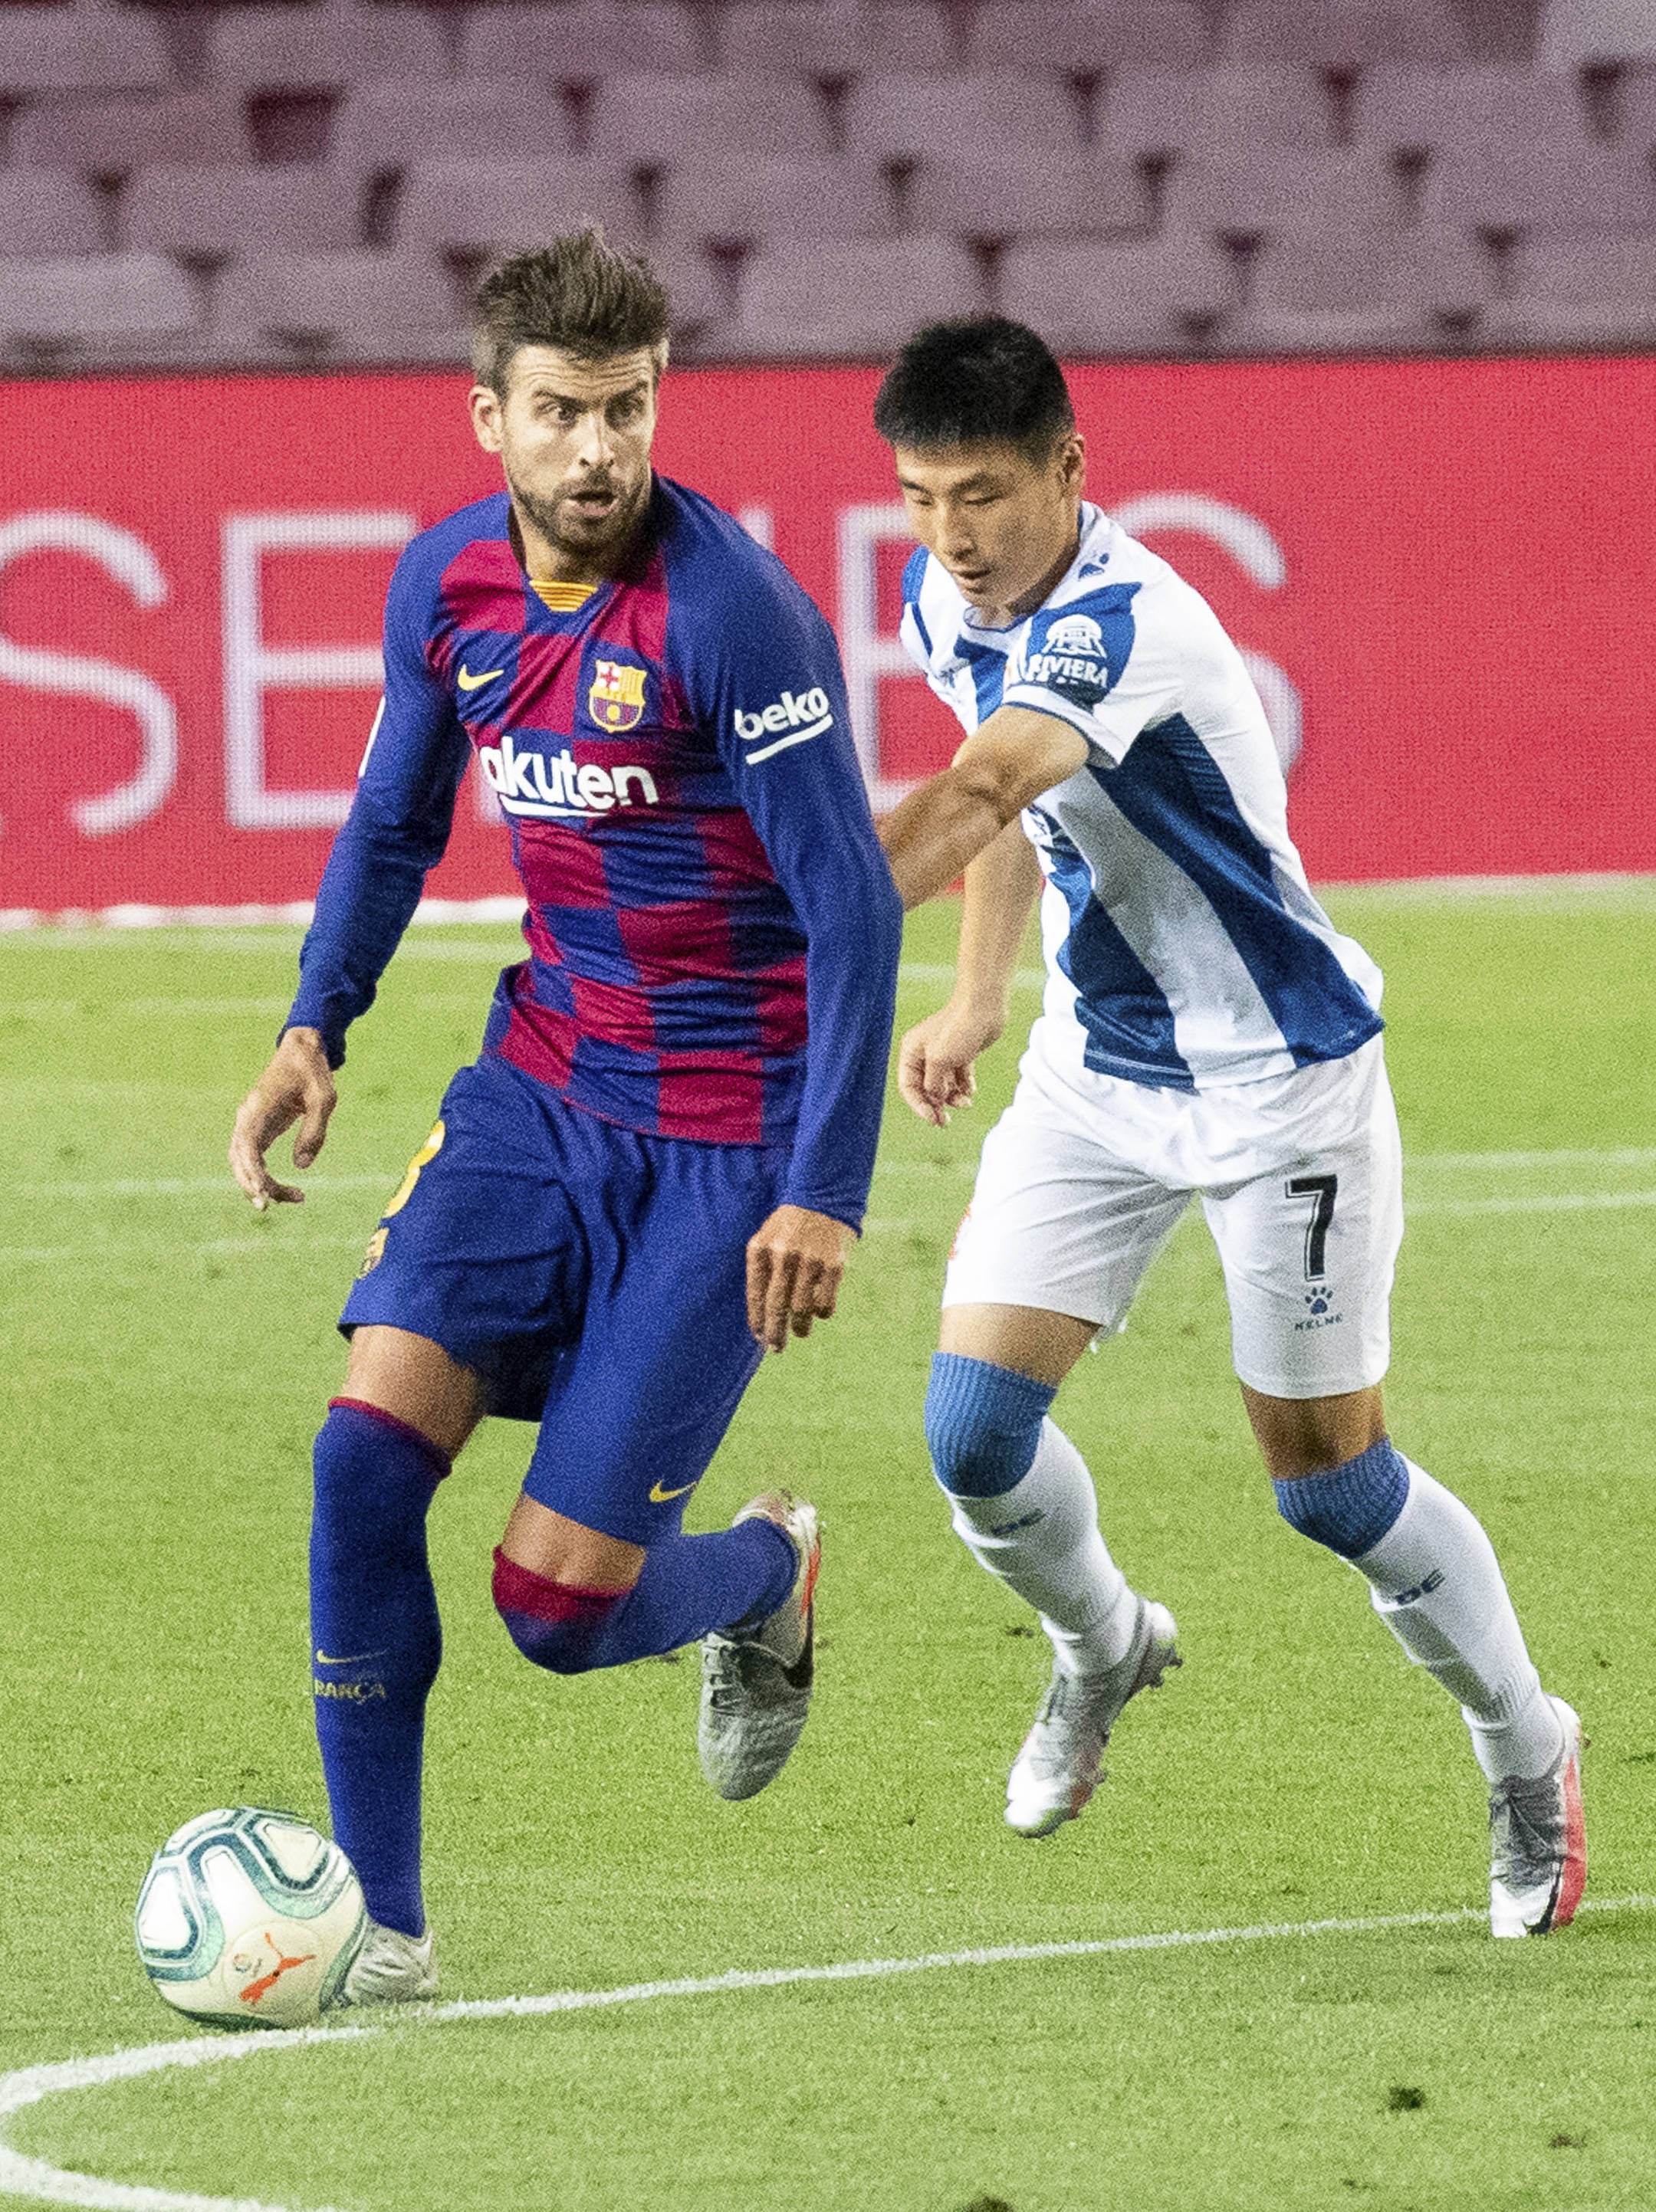 7月8日,西班牙人队球员武磊(右)在比赛中防守巴塞罗那队球员皮克.